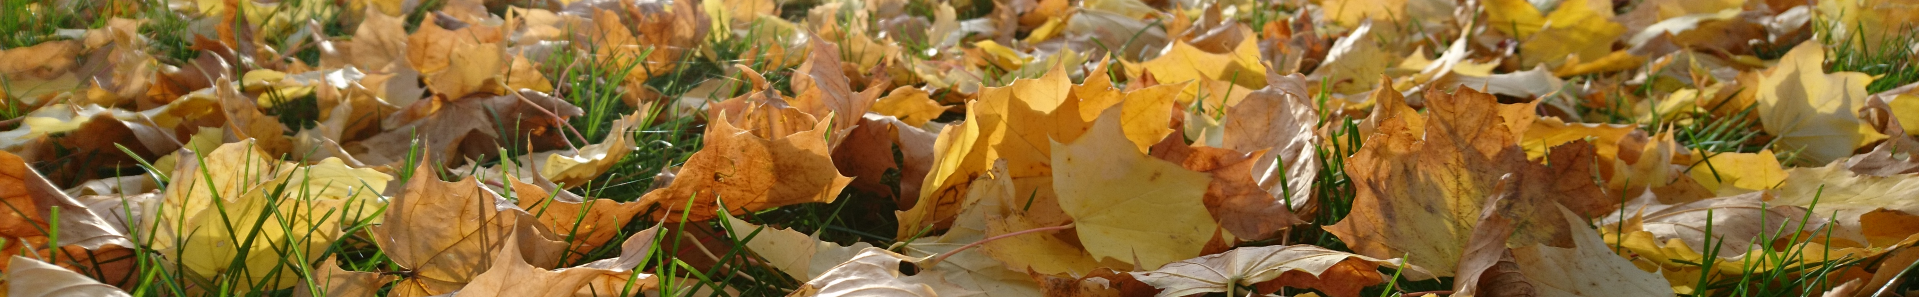 Herbst - Blätter